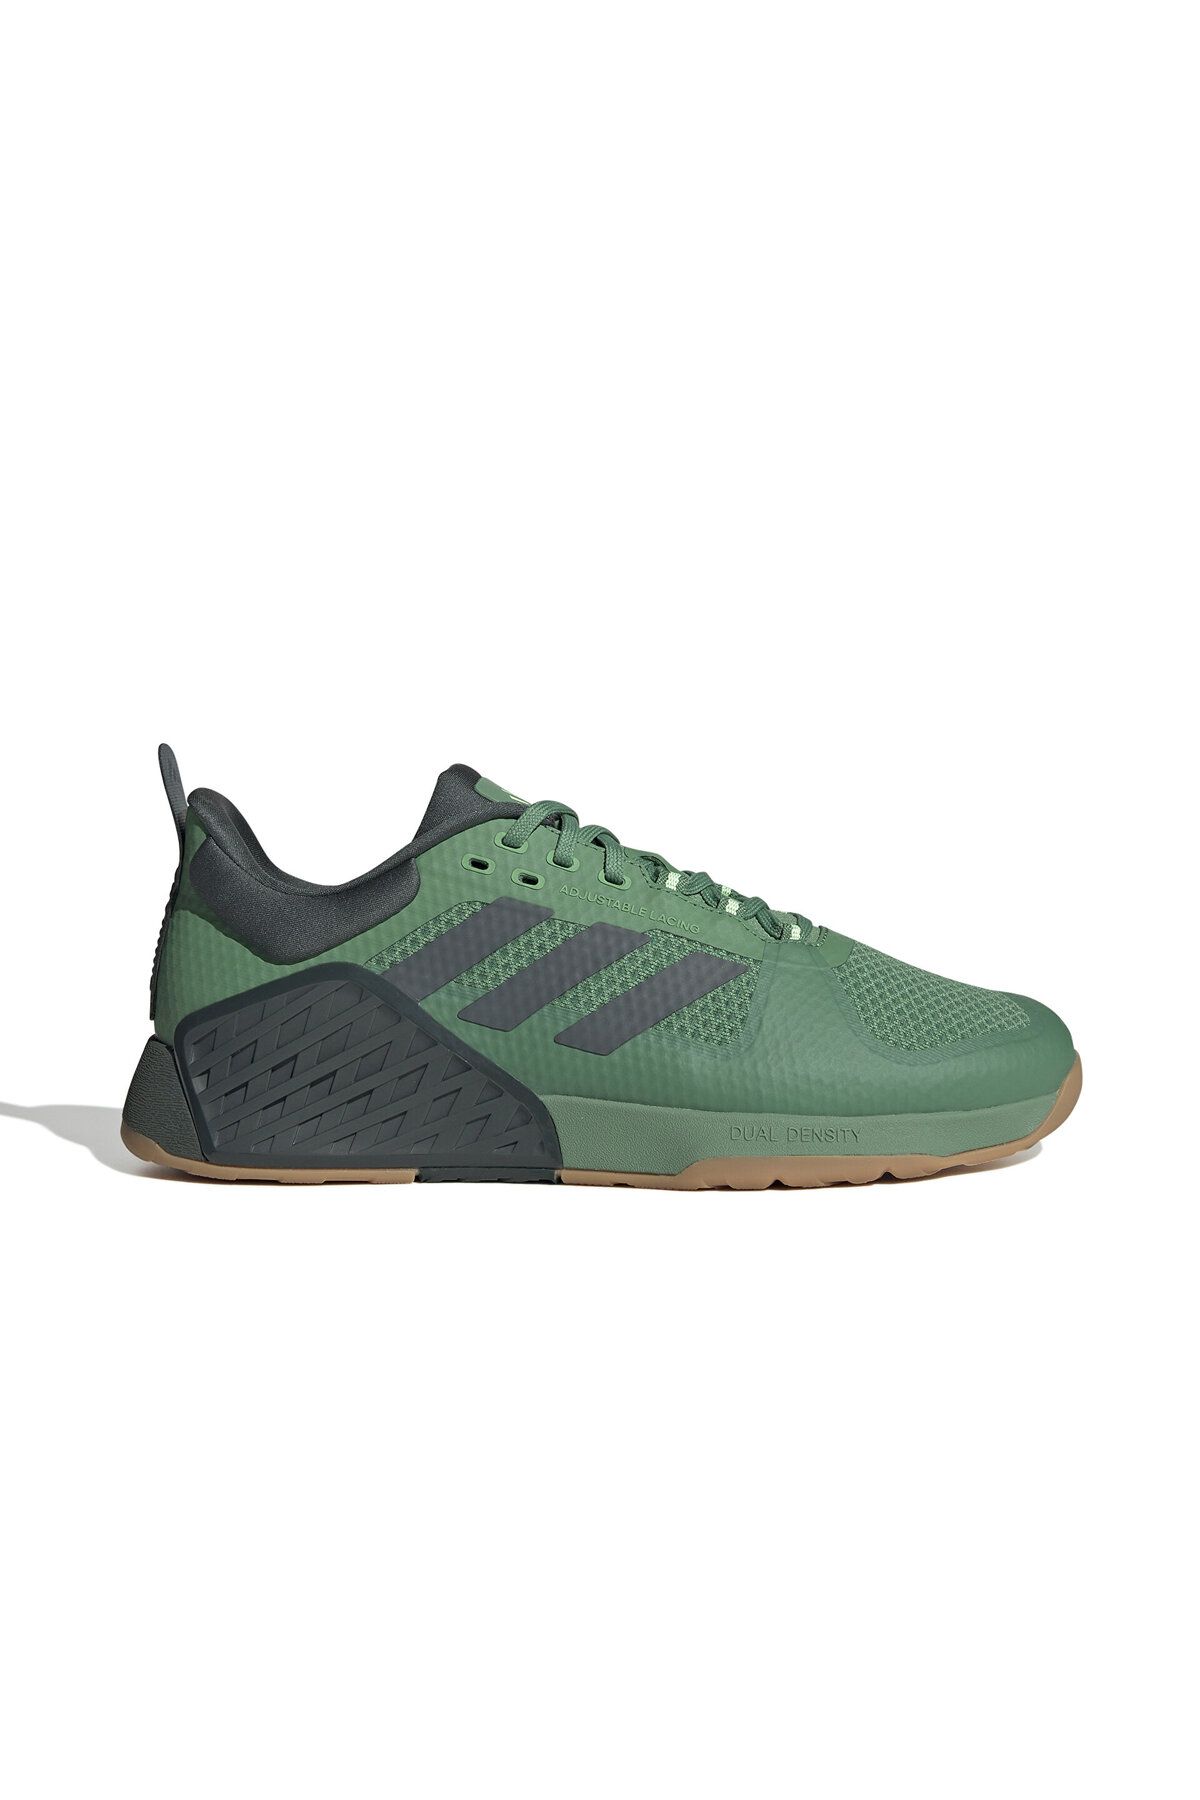 adidas Dropset 2 Trainer Erkek Anterenman Ayakkabısı IE5489 Yeşil